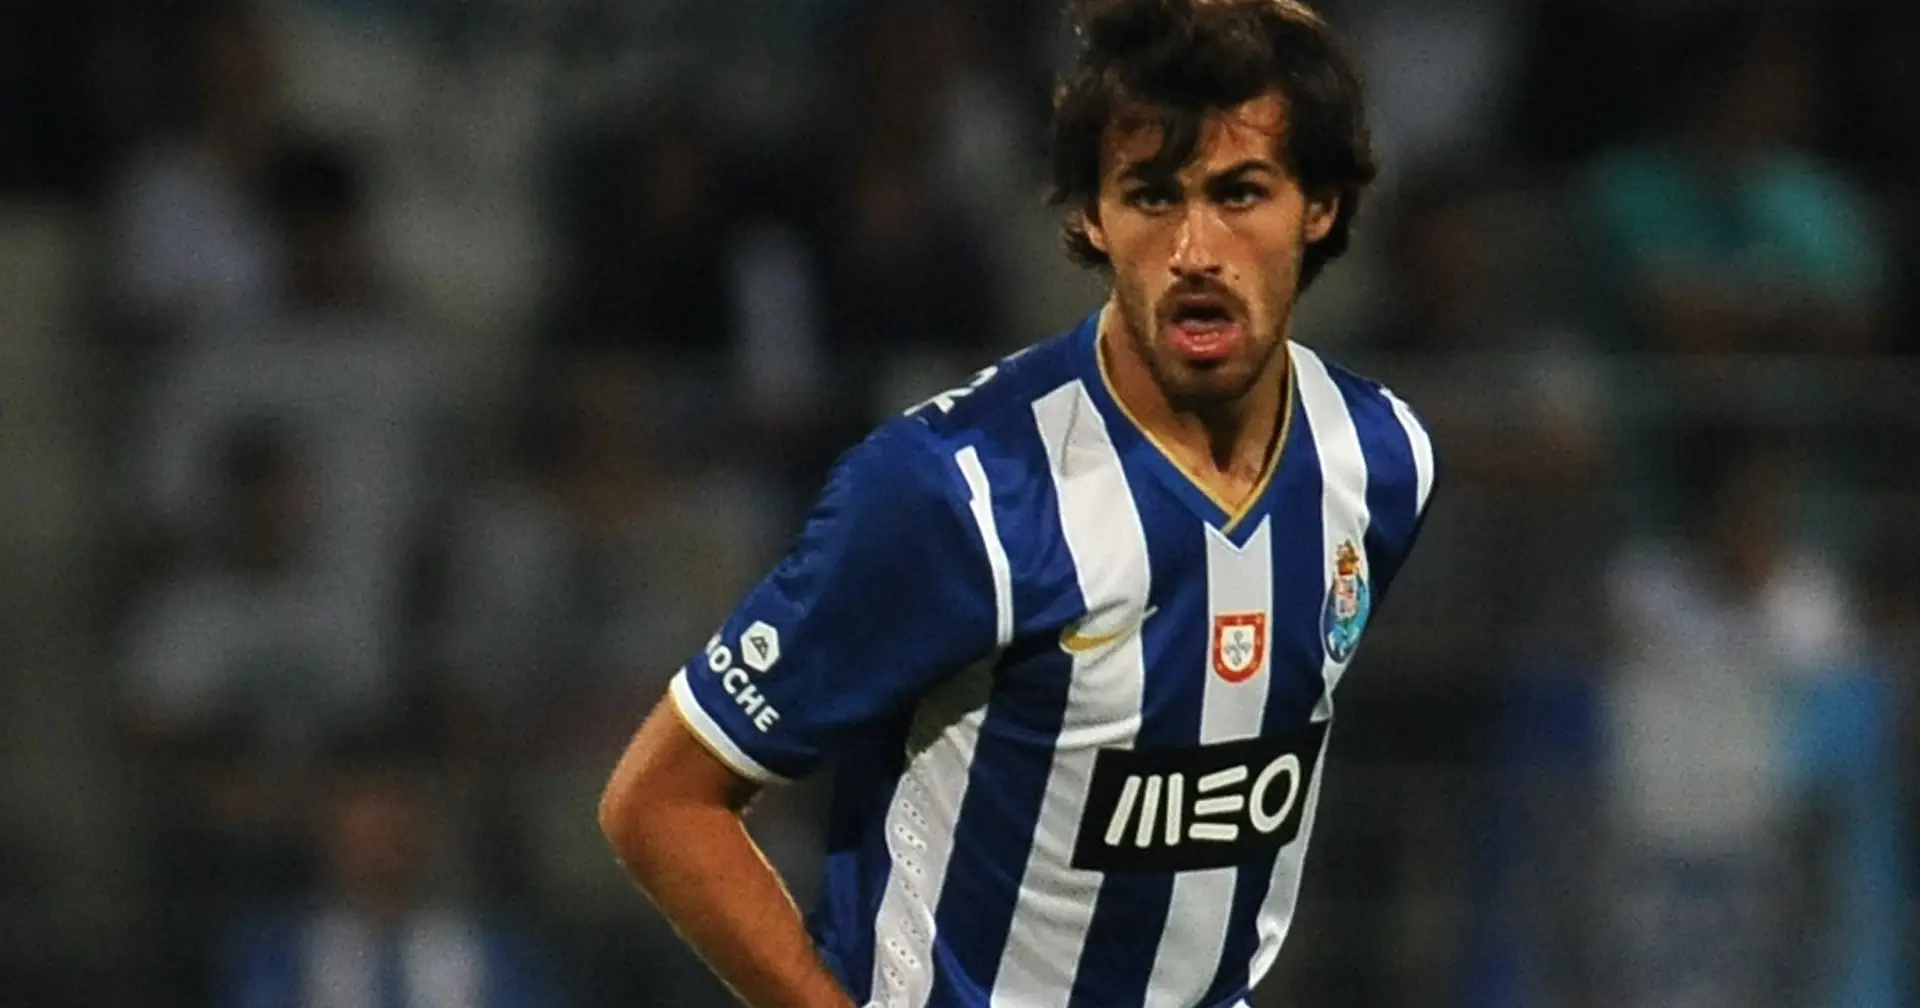 “Au FC Porto, Paulo Fonseca frappait à la porte pour entrer dans le vestiaire, ils ne l’ouvraient pas et ils disaient : ‘L’entraînement n’est qu’à 10h30’.  Il y avait trop d’égos